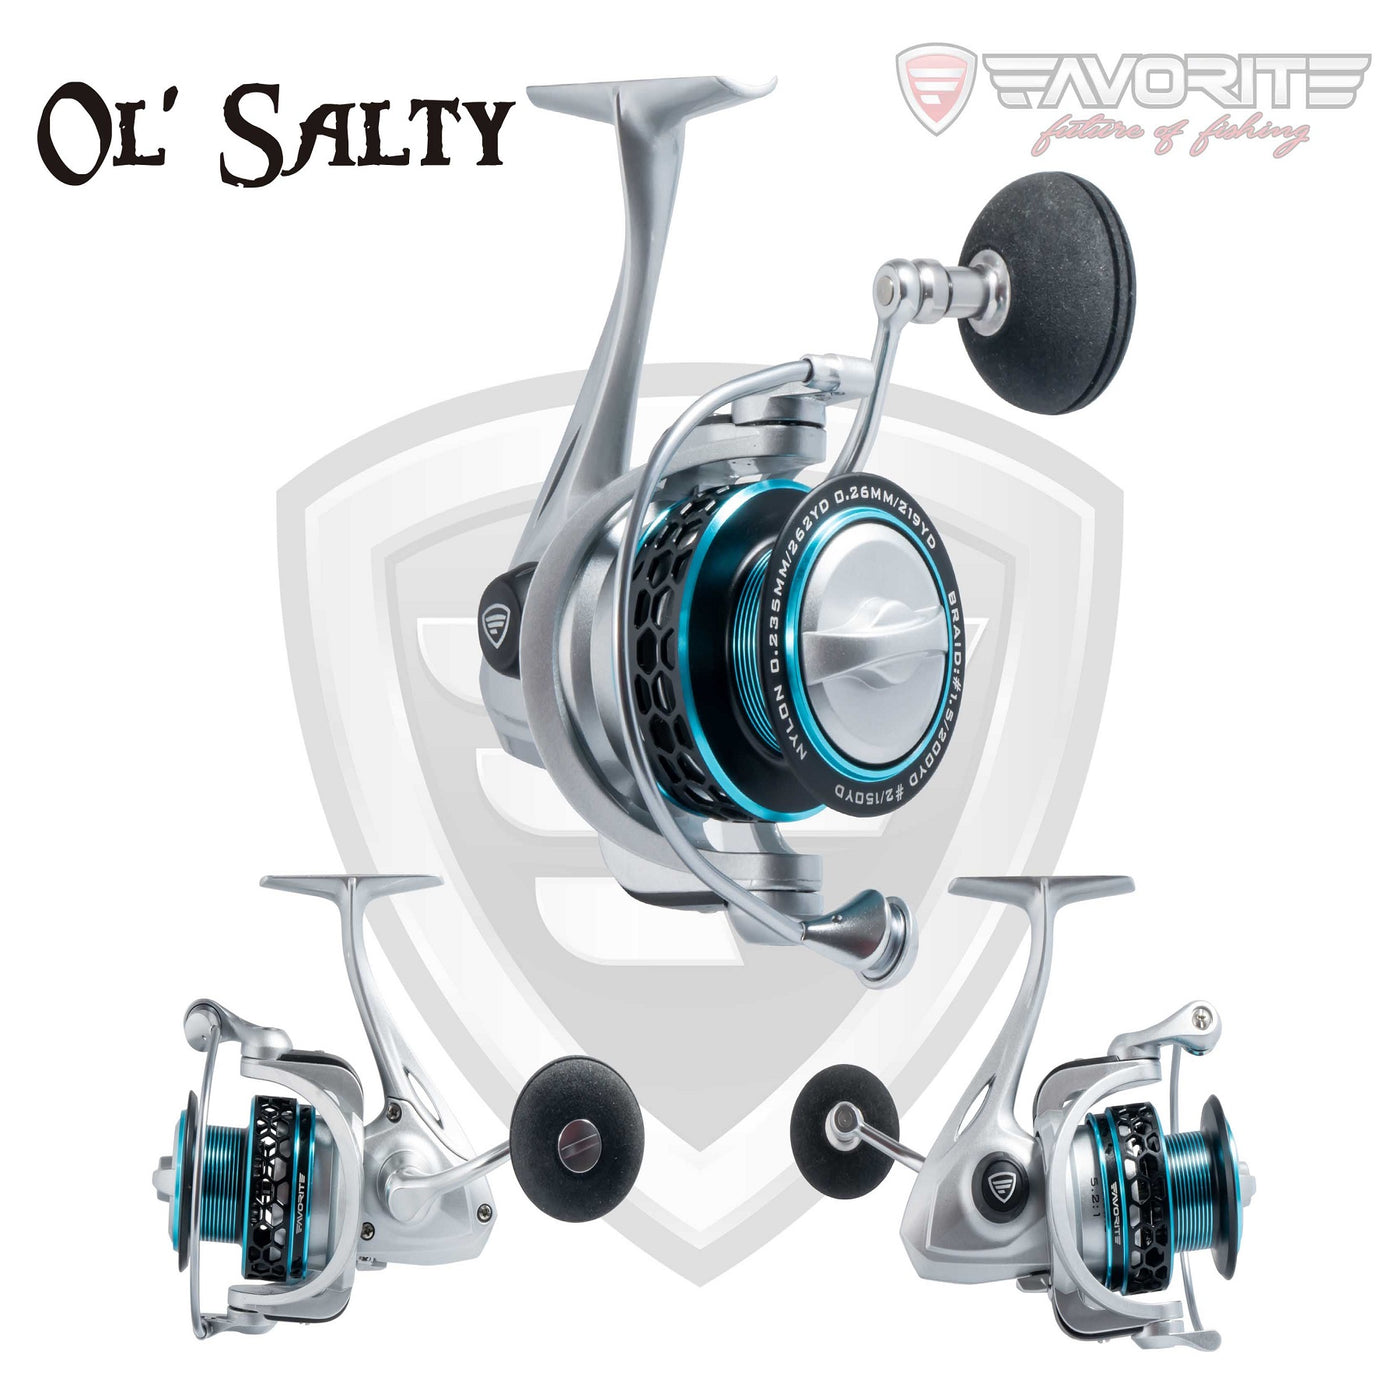 Favorite Ol' Salty Spinning Reel - OLS5000